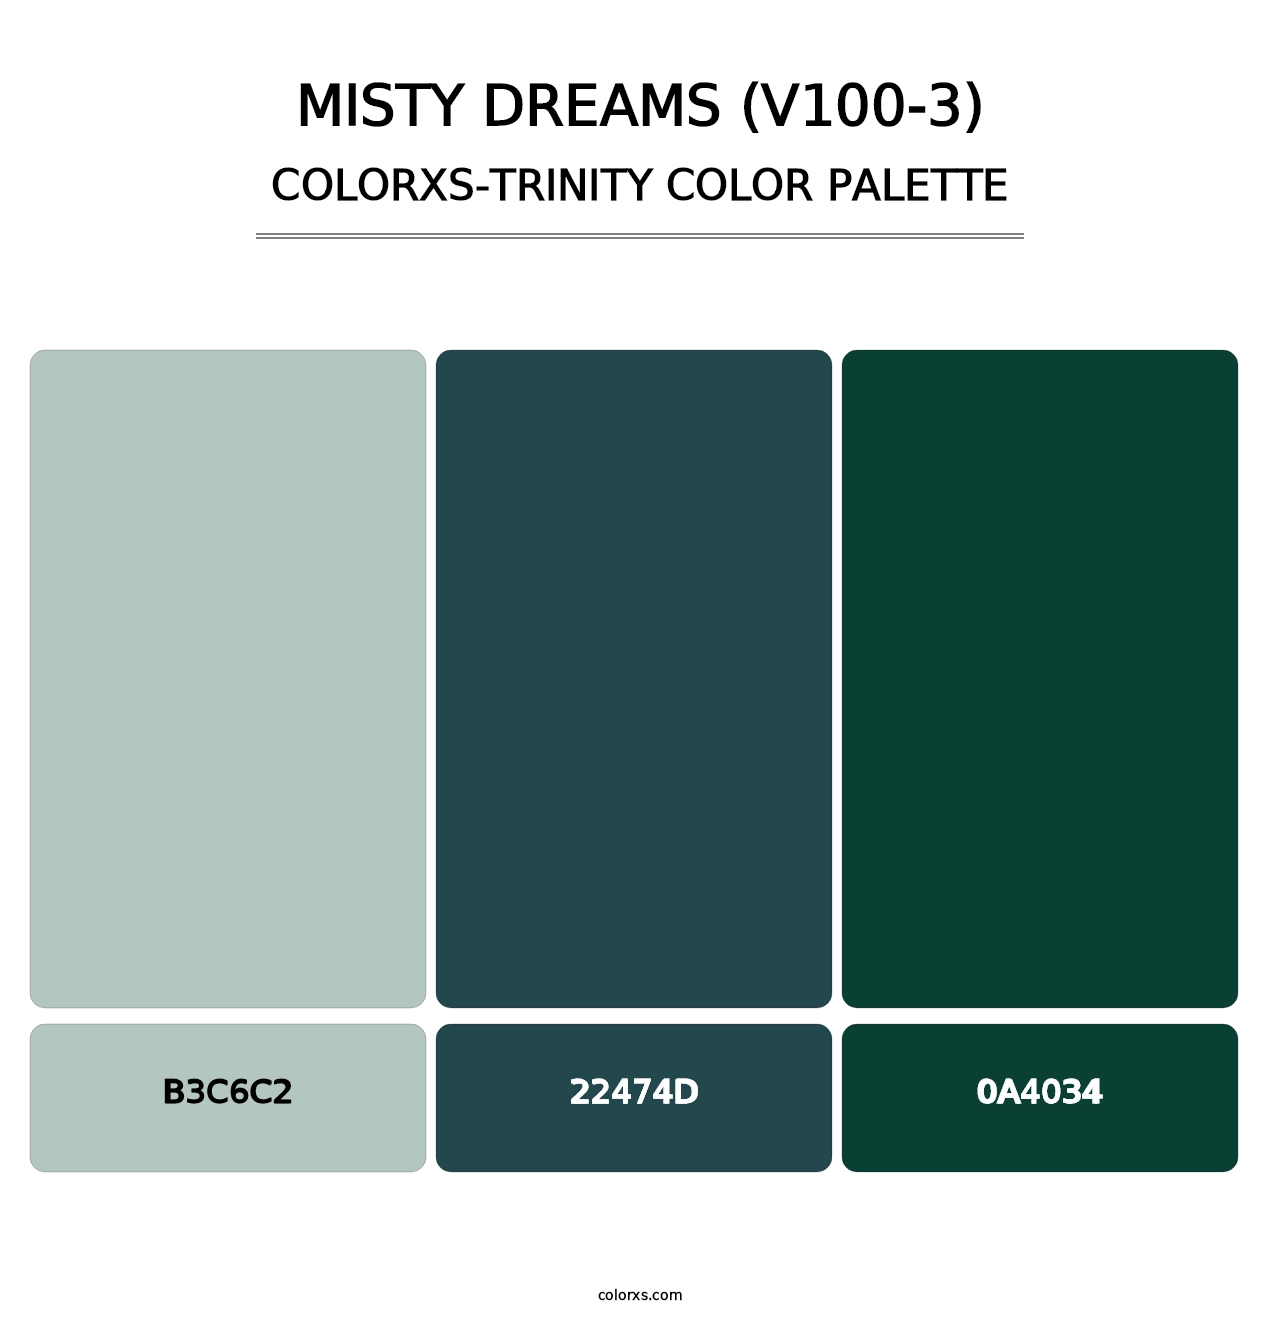 Misty Dreams (V100-3) - Colorxs Trinity Palette